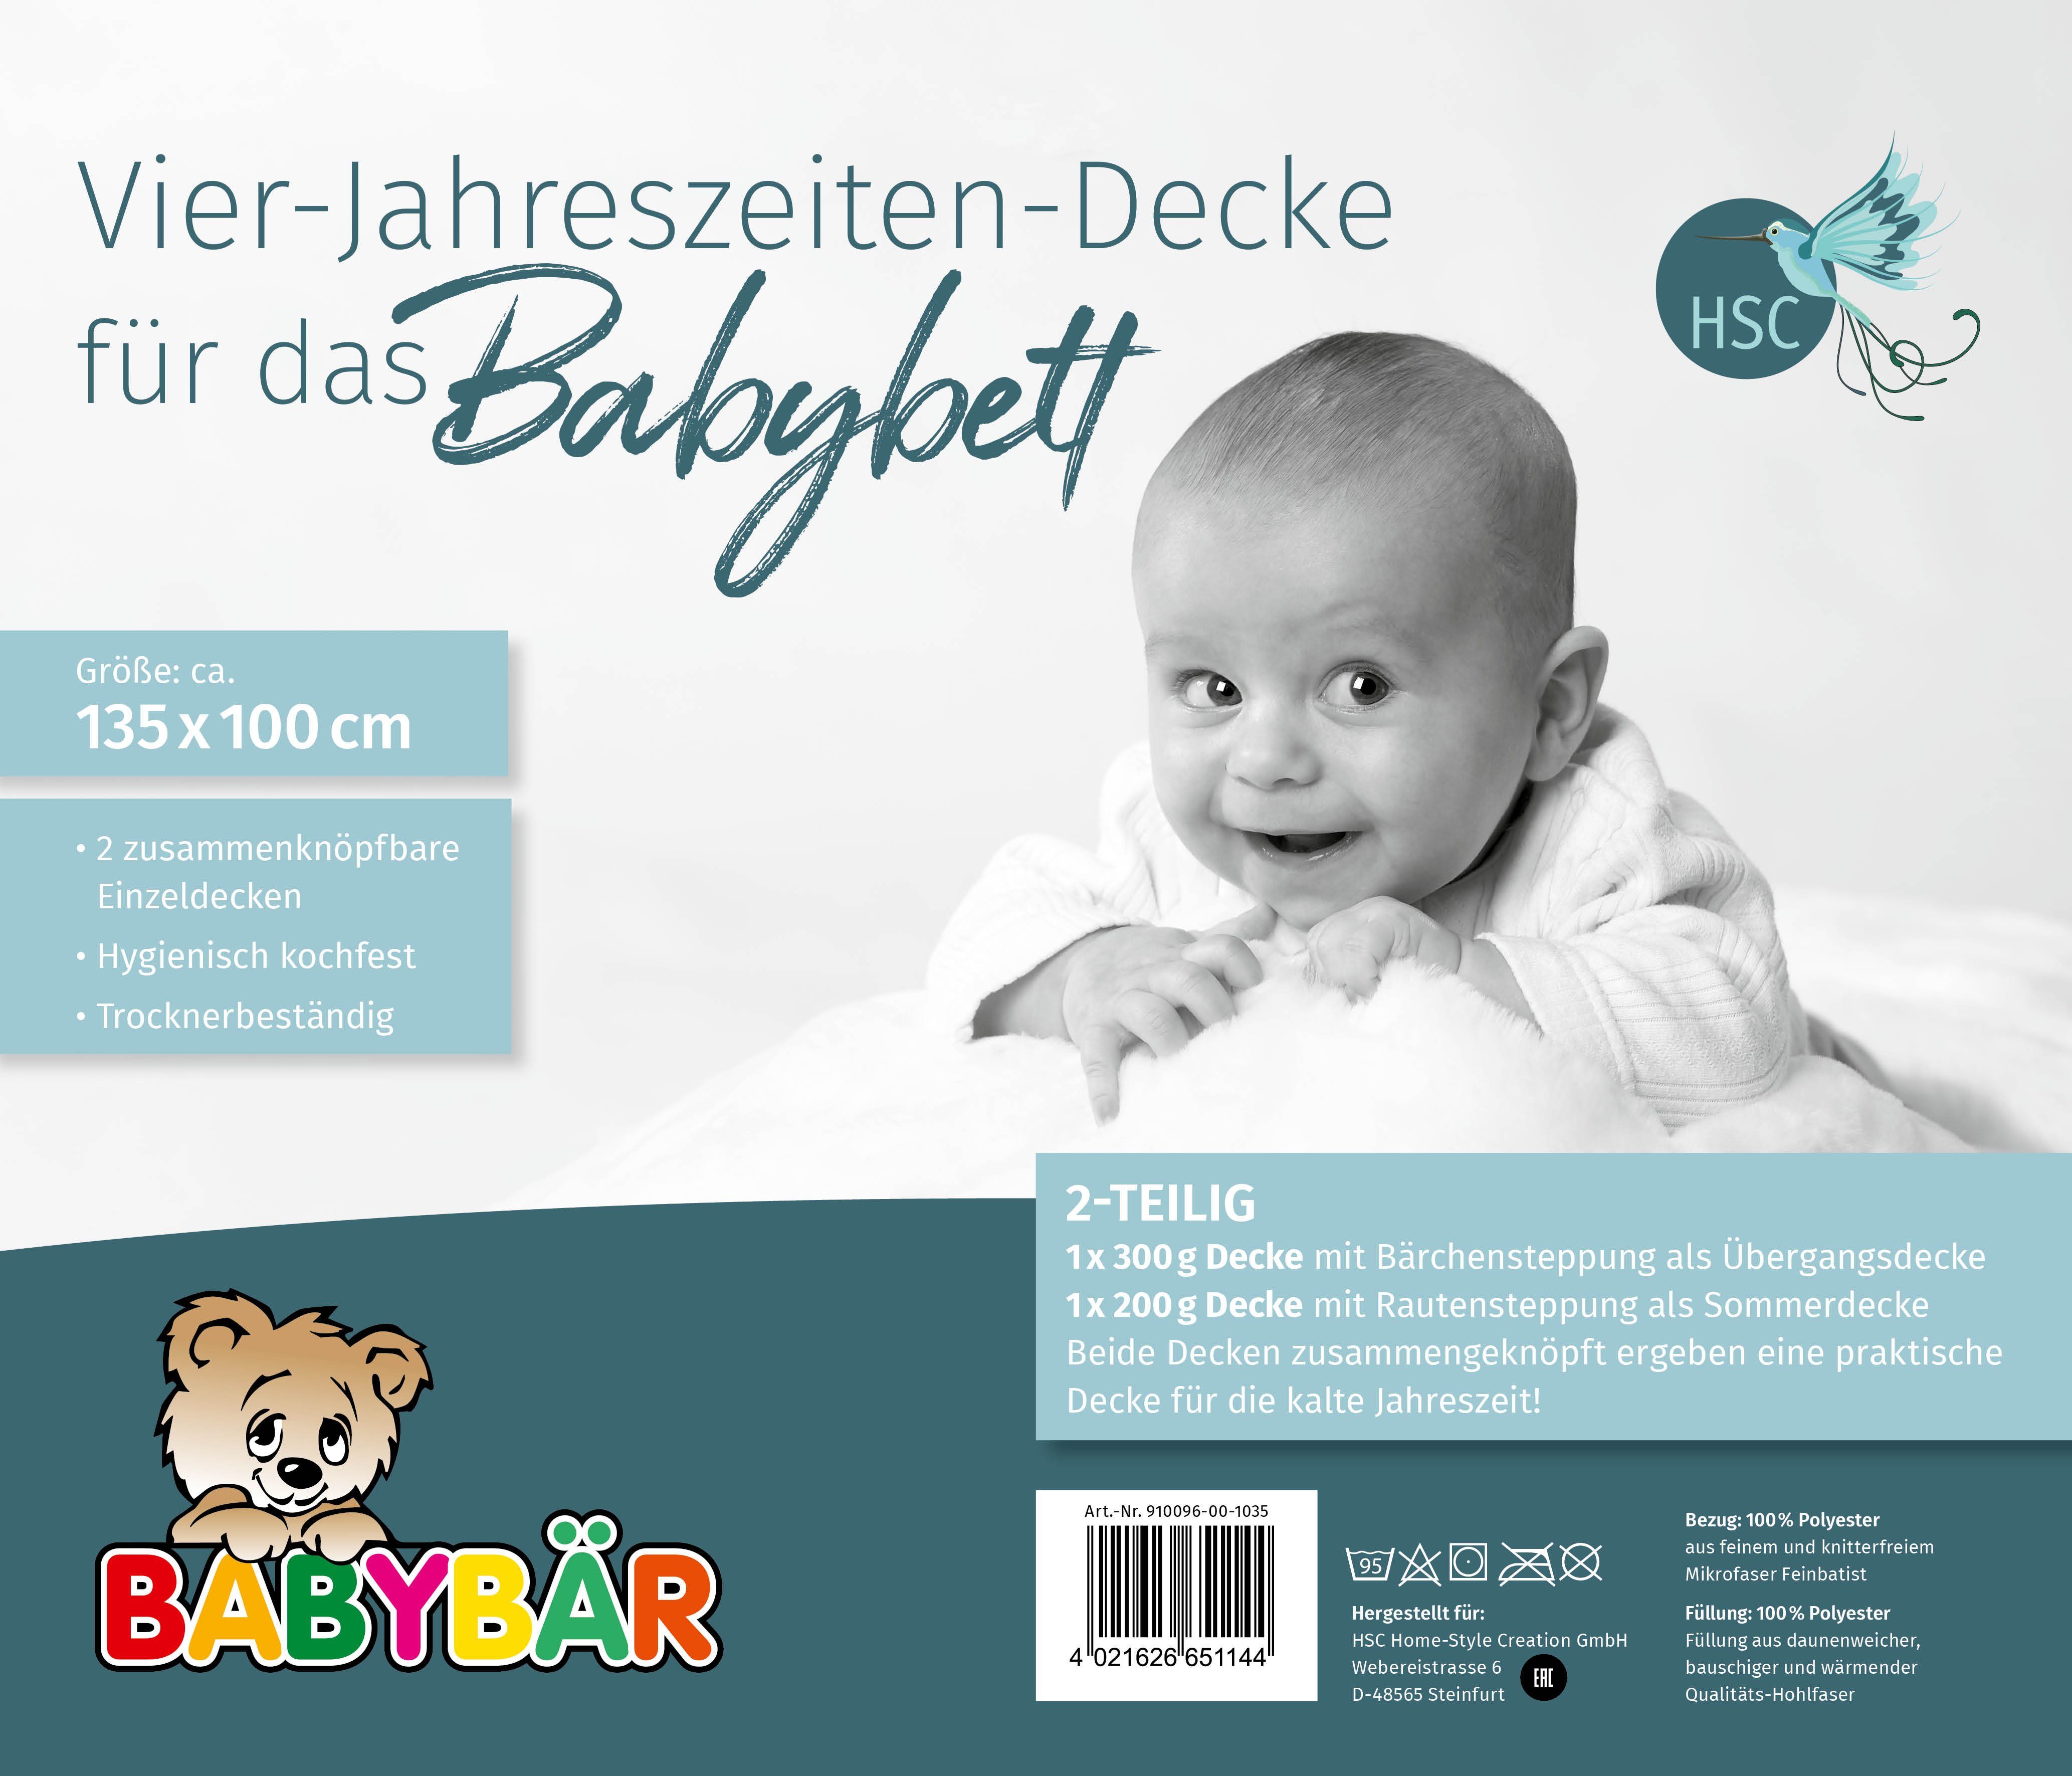 Babybettdecke, Baby Vierjahreszeitenbettdecke 2-teilig, HSC Home-Style-Creation GmbH, Füllung: 100% Polyester, Bezug: 100% Polyester, für ein angenehmes Schlafklima, atmungsaktiv und wärmeausgleichend.